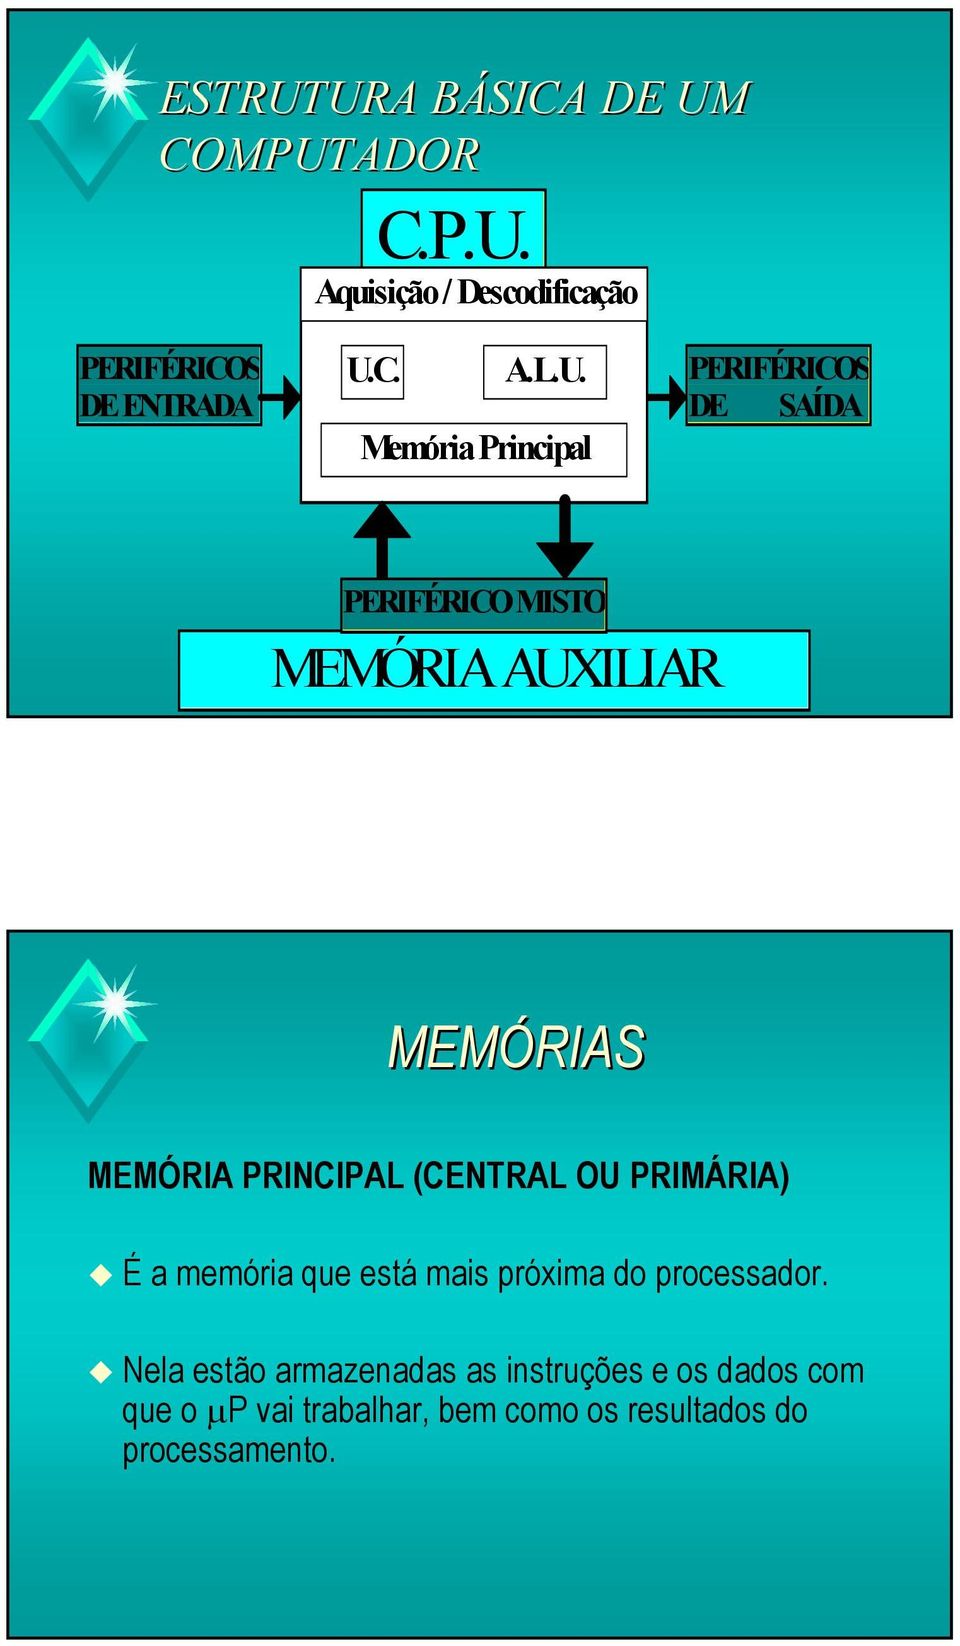 PRINCIPAL (CENTRAL OU PRIMÁRIA) É a memória que está mais próxima do processador.